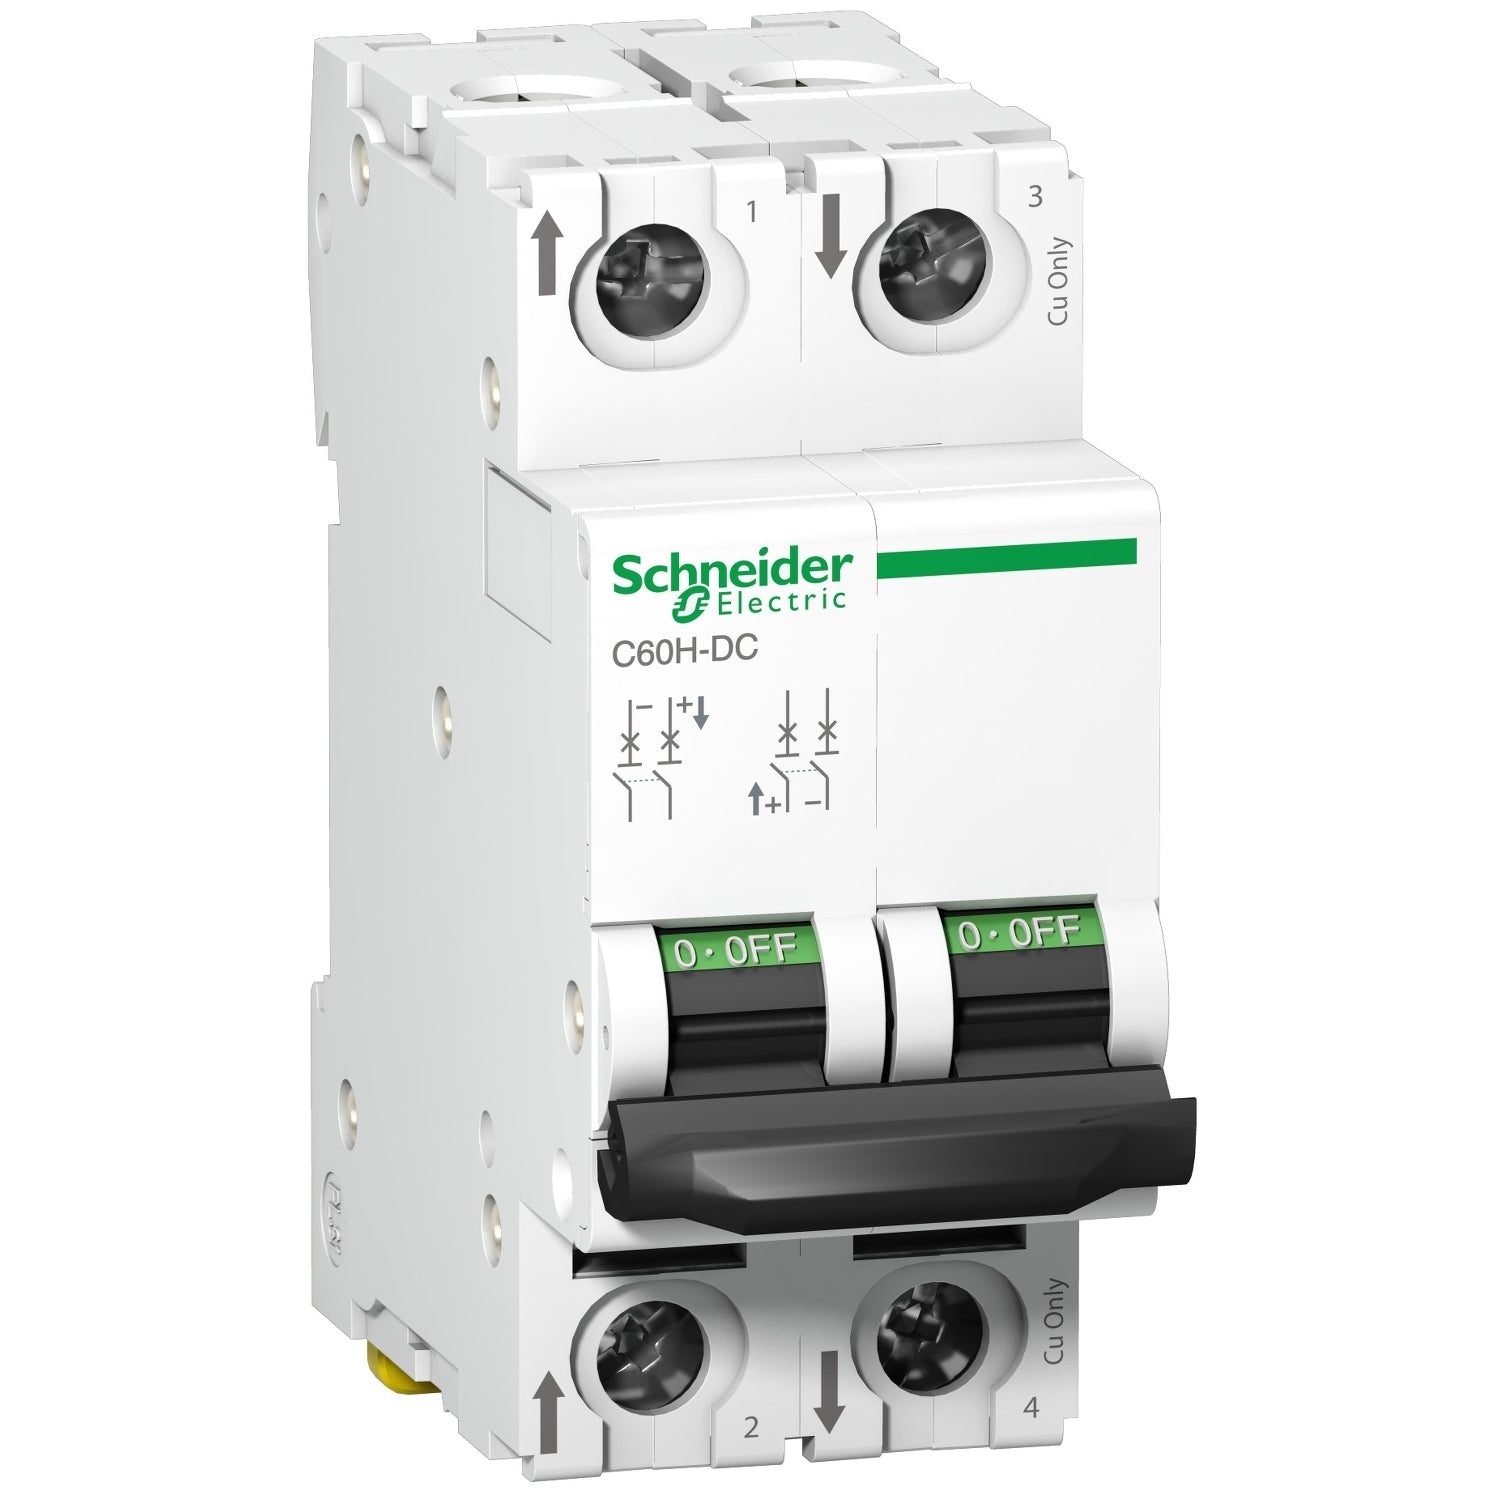 Interruptor termomagnético bipolar C60H-DC de la marca Schneider Electric con corriente nominal de dos amperios y poder de ruptura veinte kiloamperios en doscientos veinte VDC. El código de referencia es A9N61522.